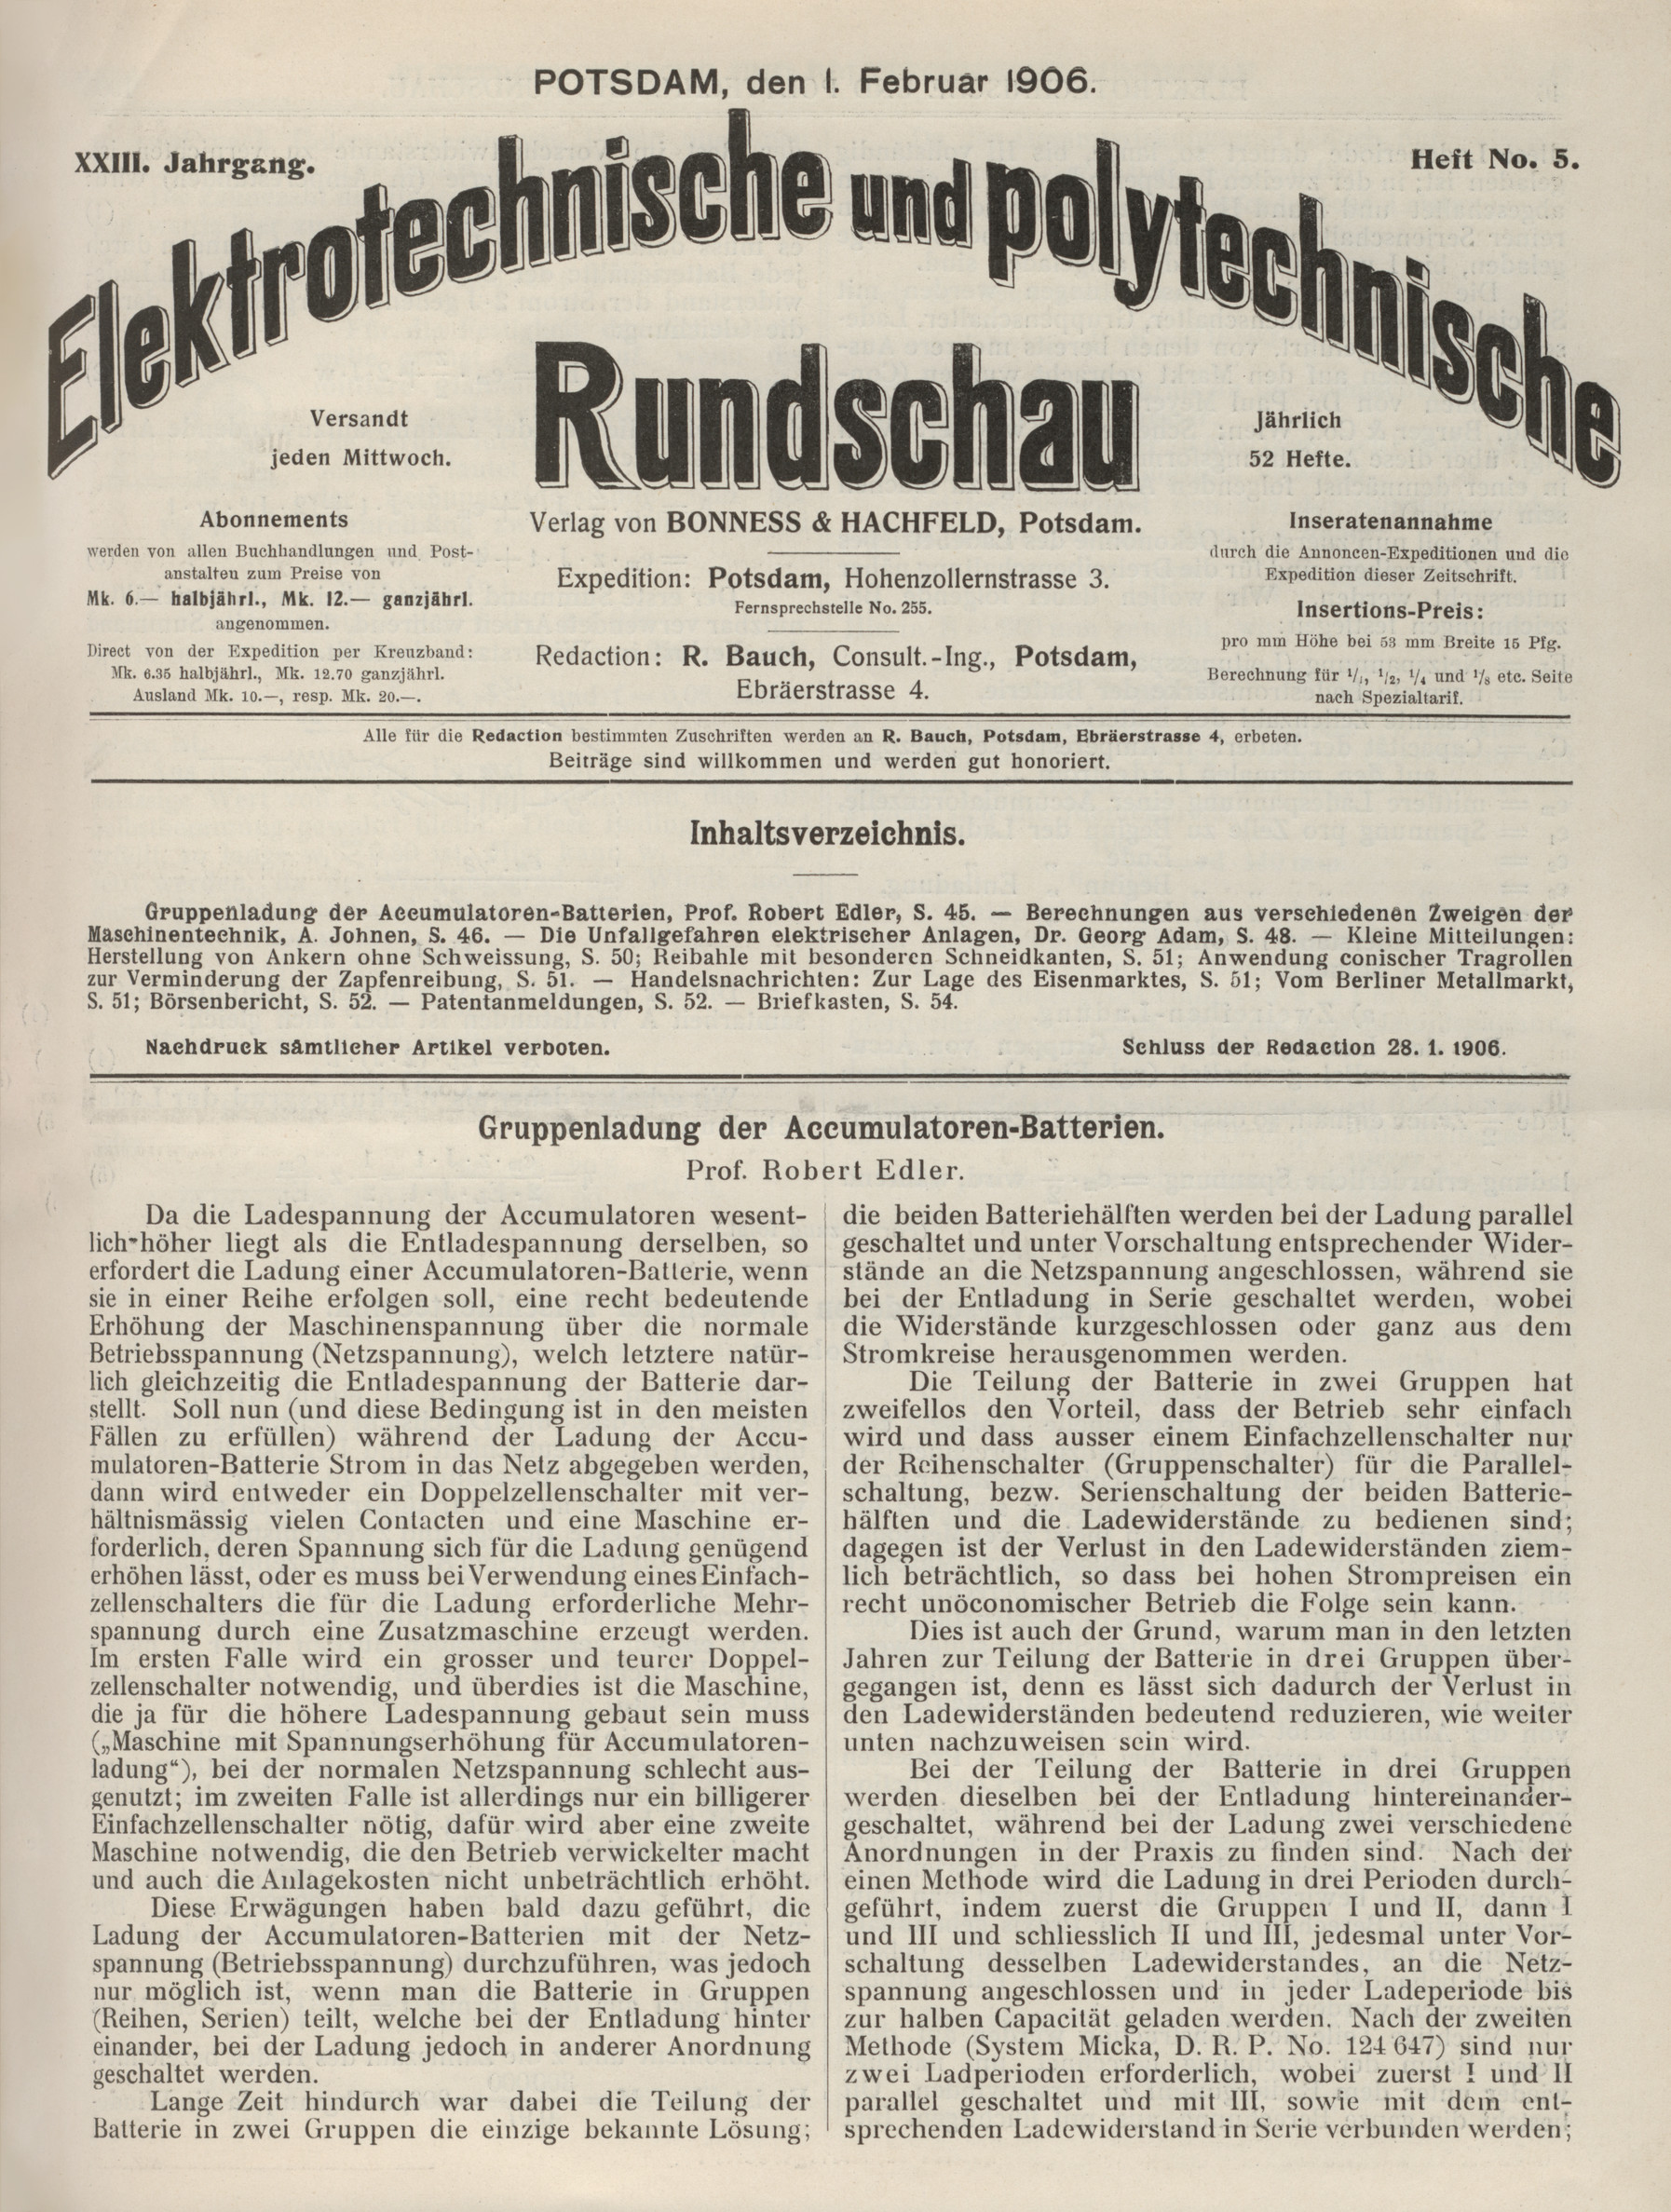 Elektrotechnische und polytechnische Rundschau, XXIII. Jahrgang, Heft No. 5